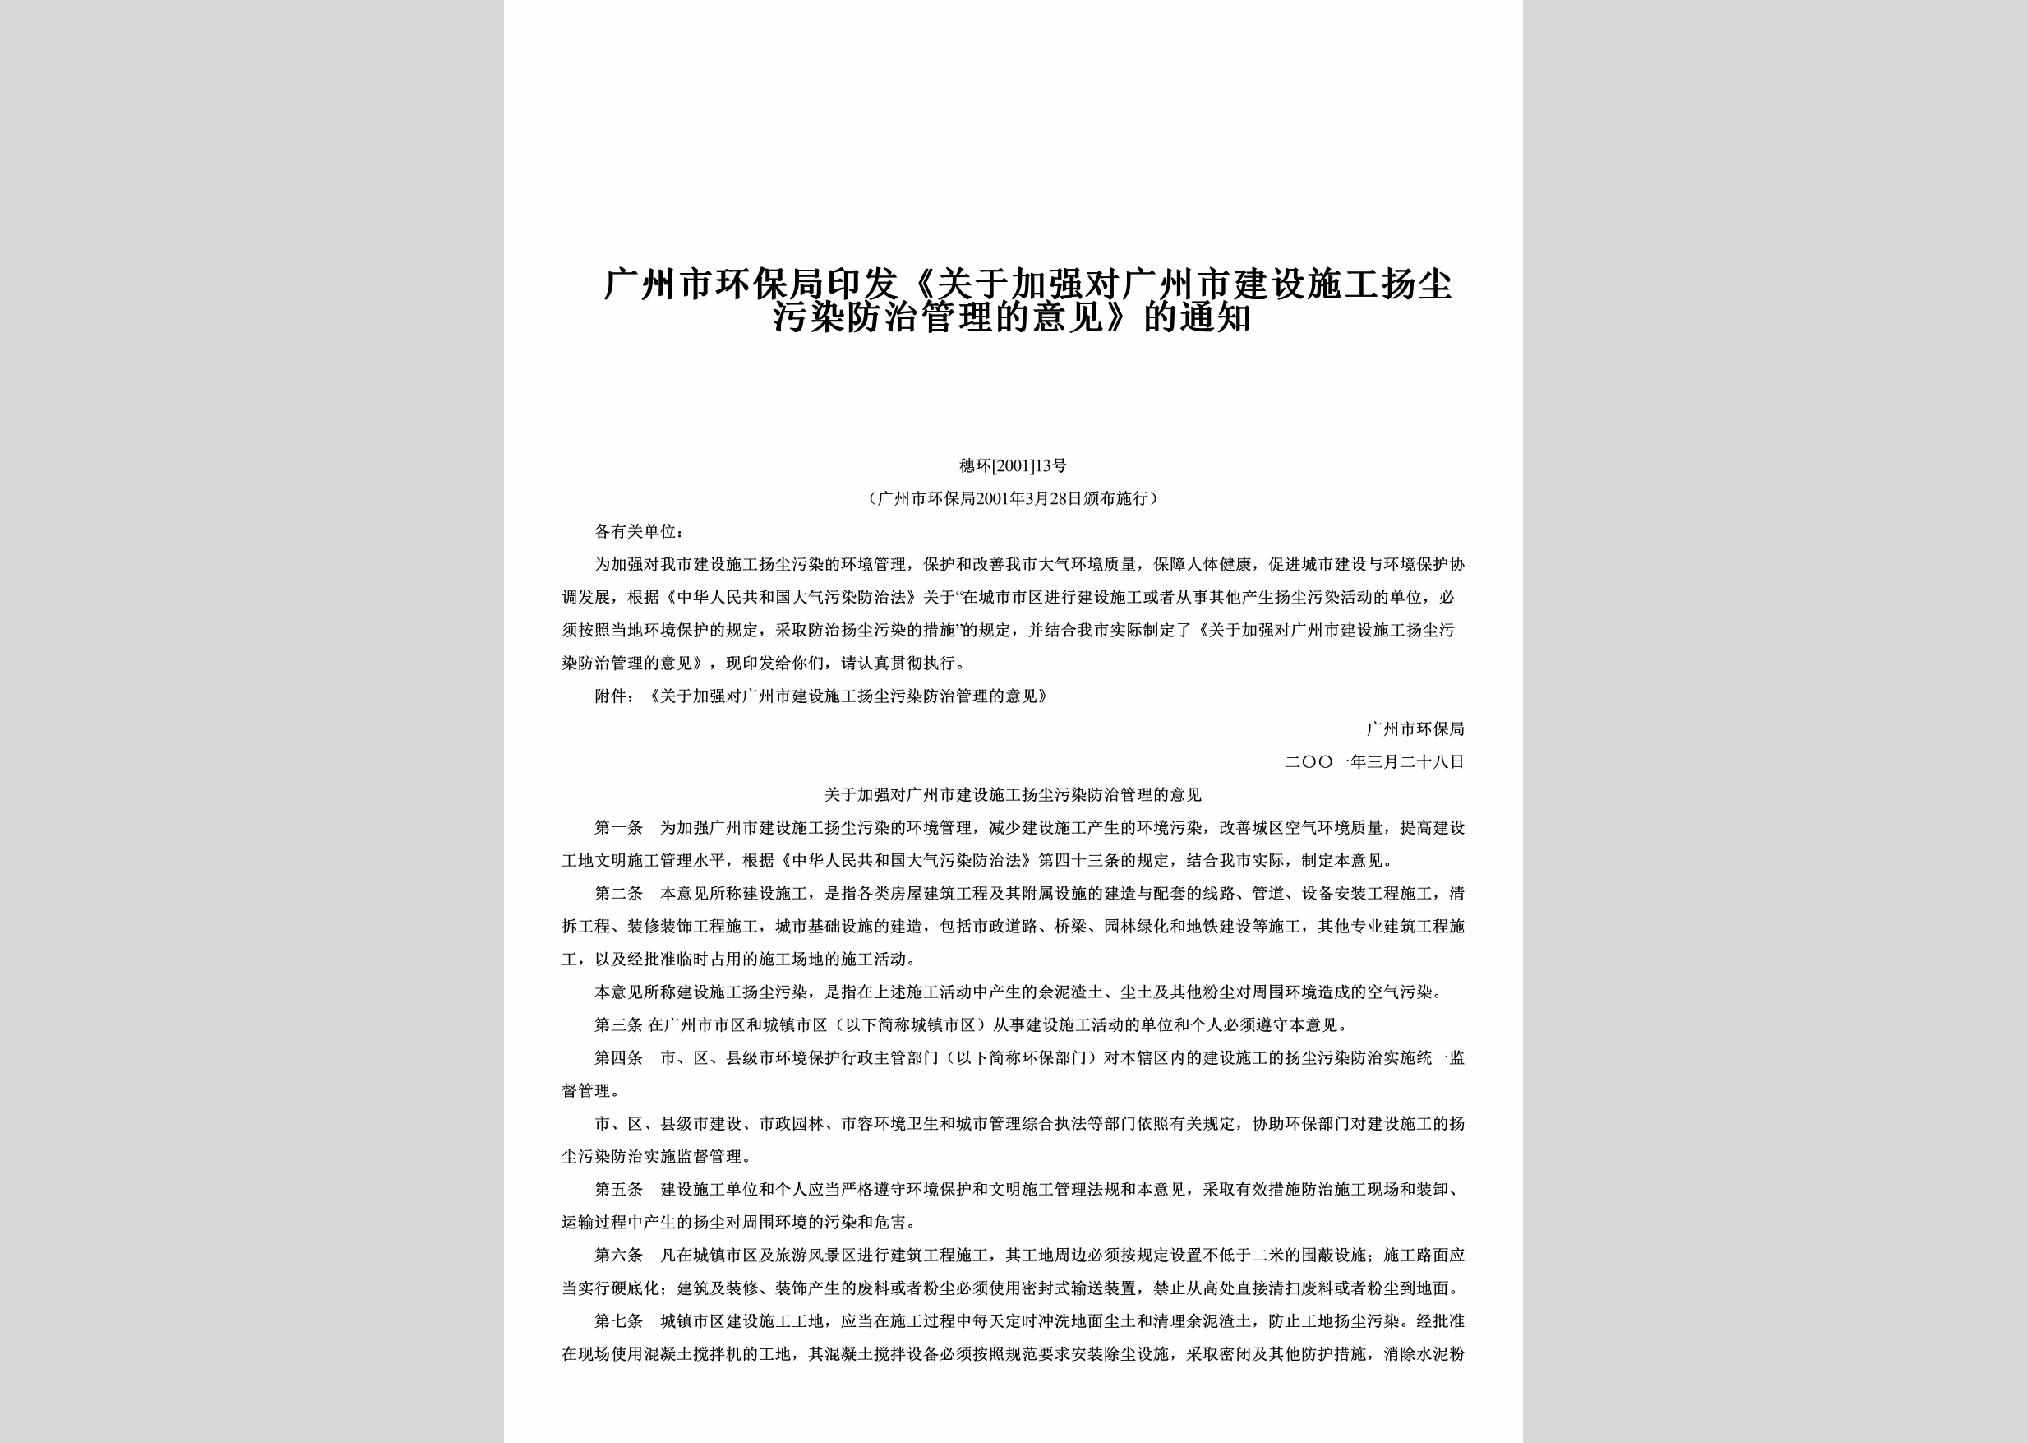 穗环[2001]13号：印发《关于加强对广州市建设施工扬尘污染防治管理的意见》的通知